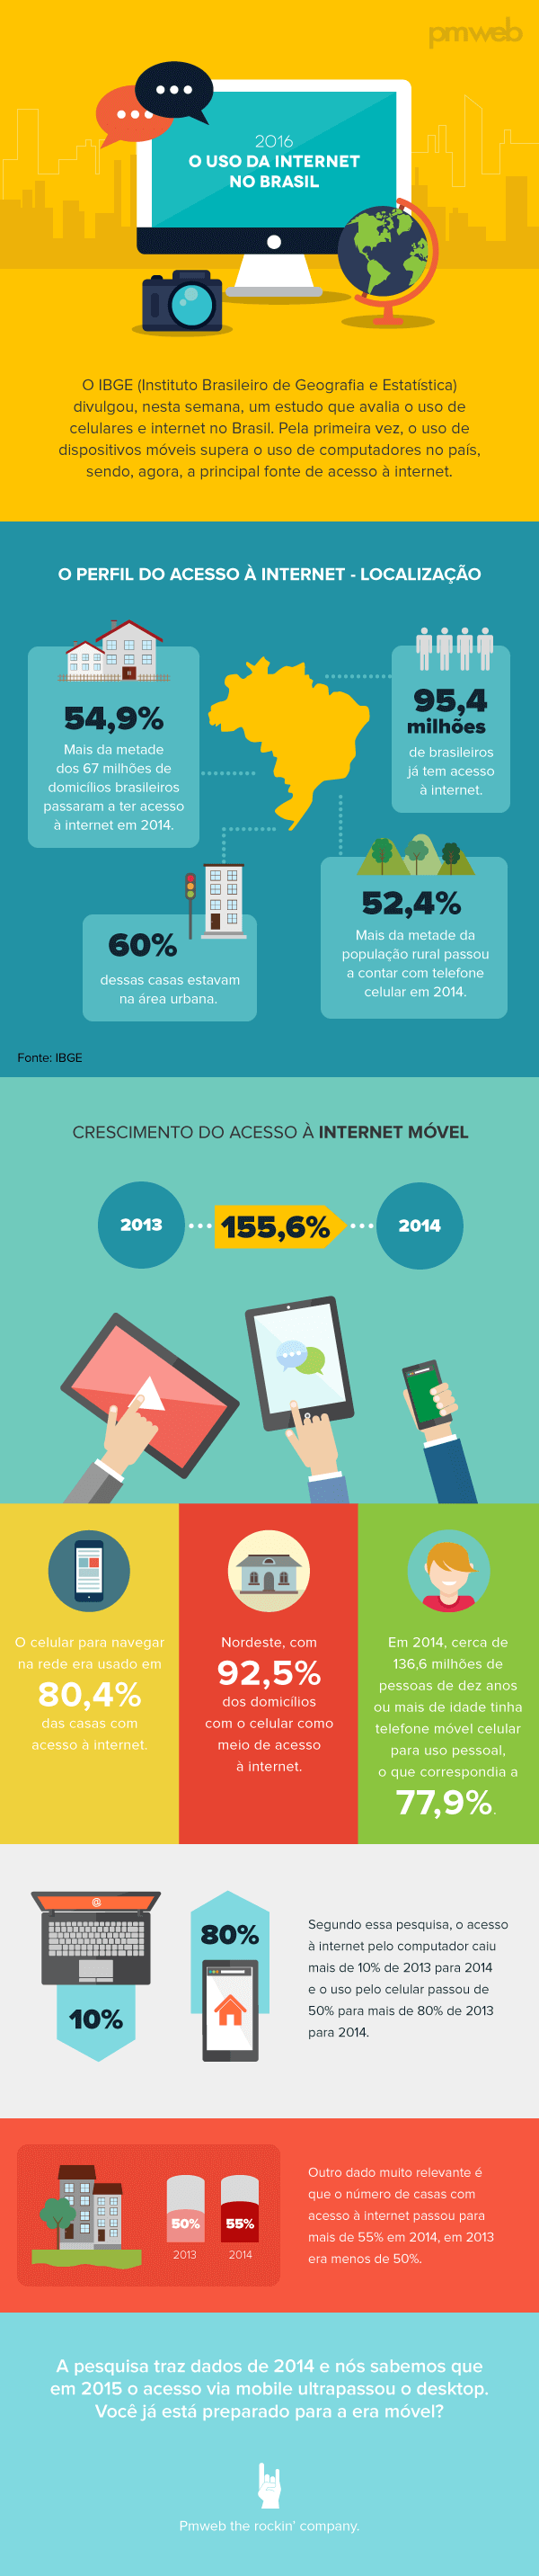 infografico_internet_no_brasil